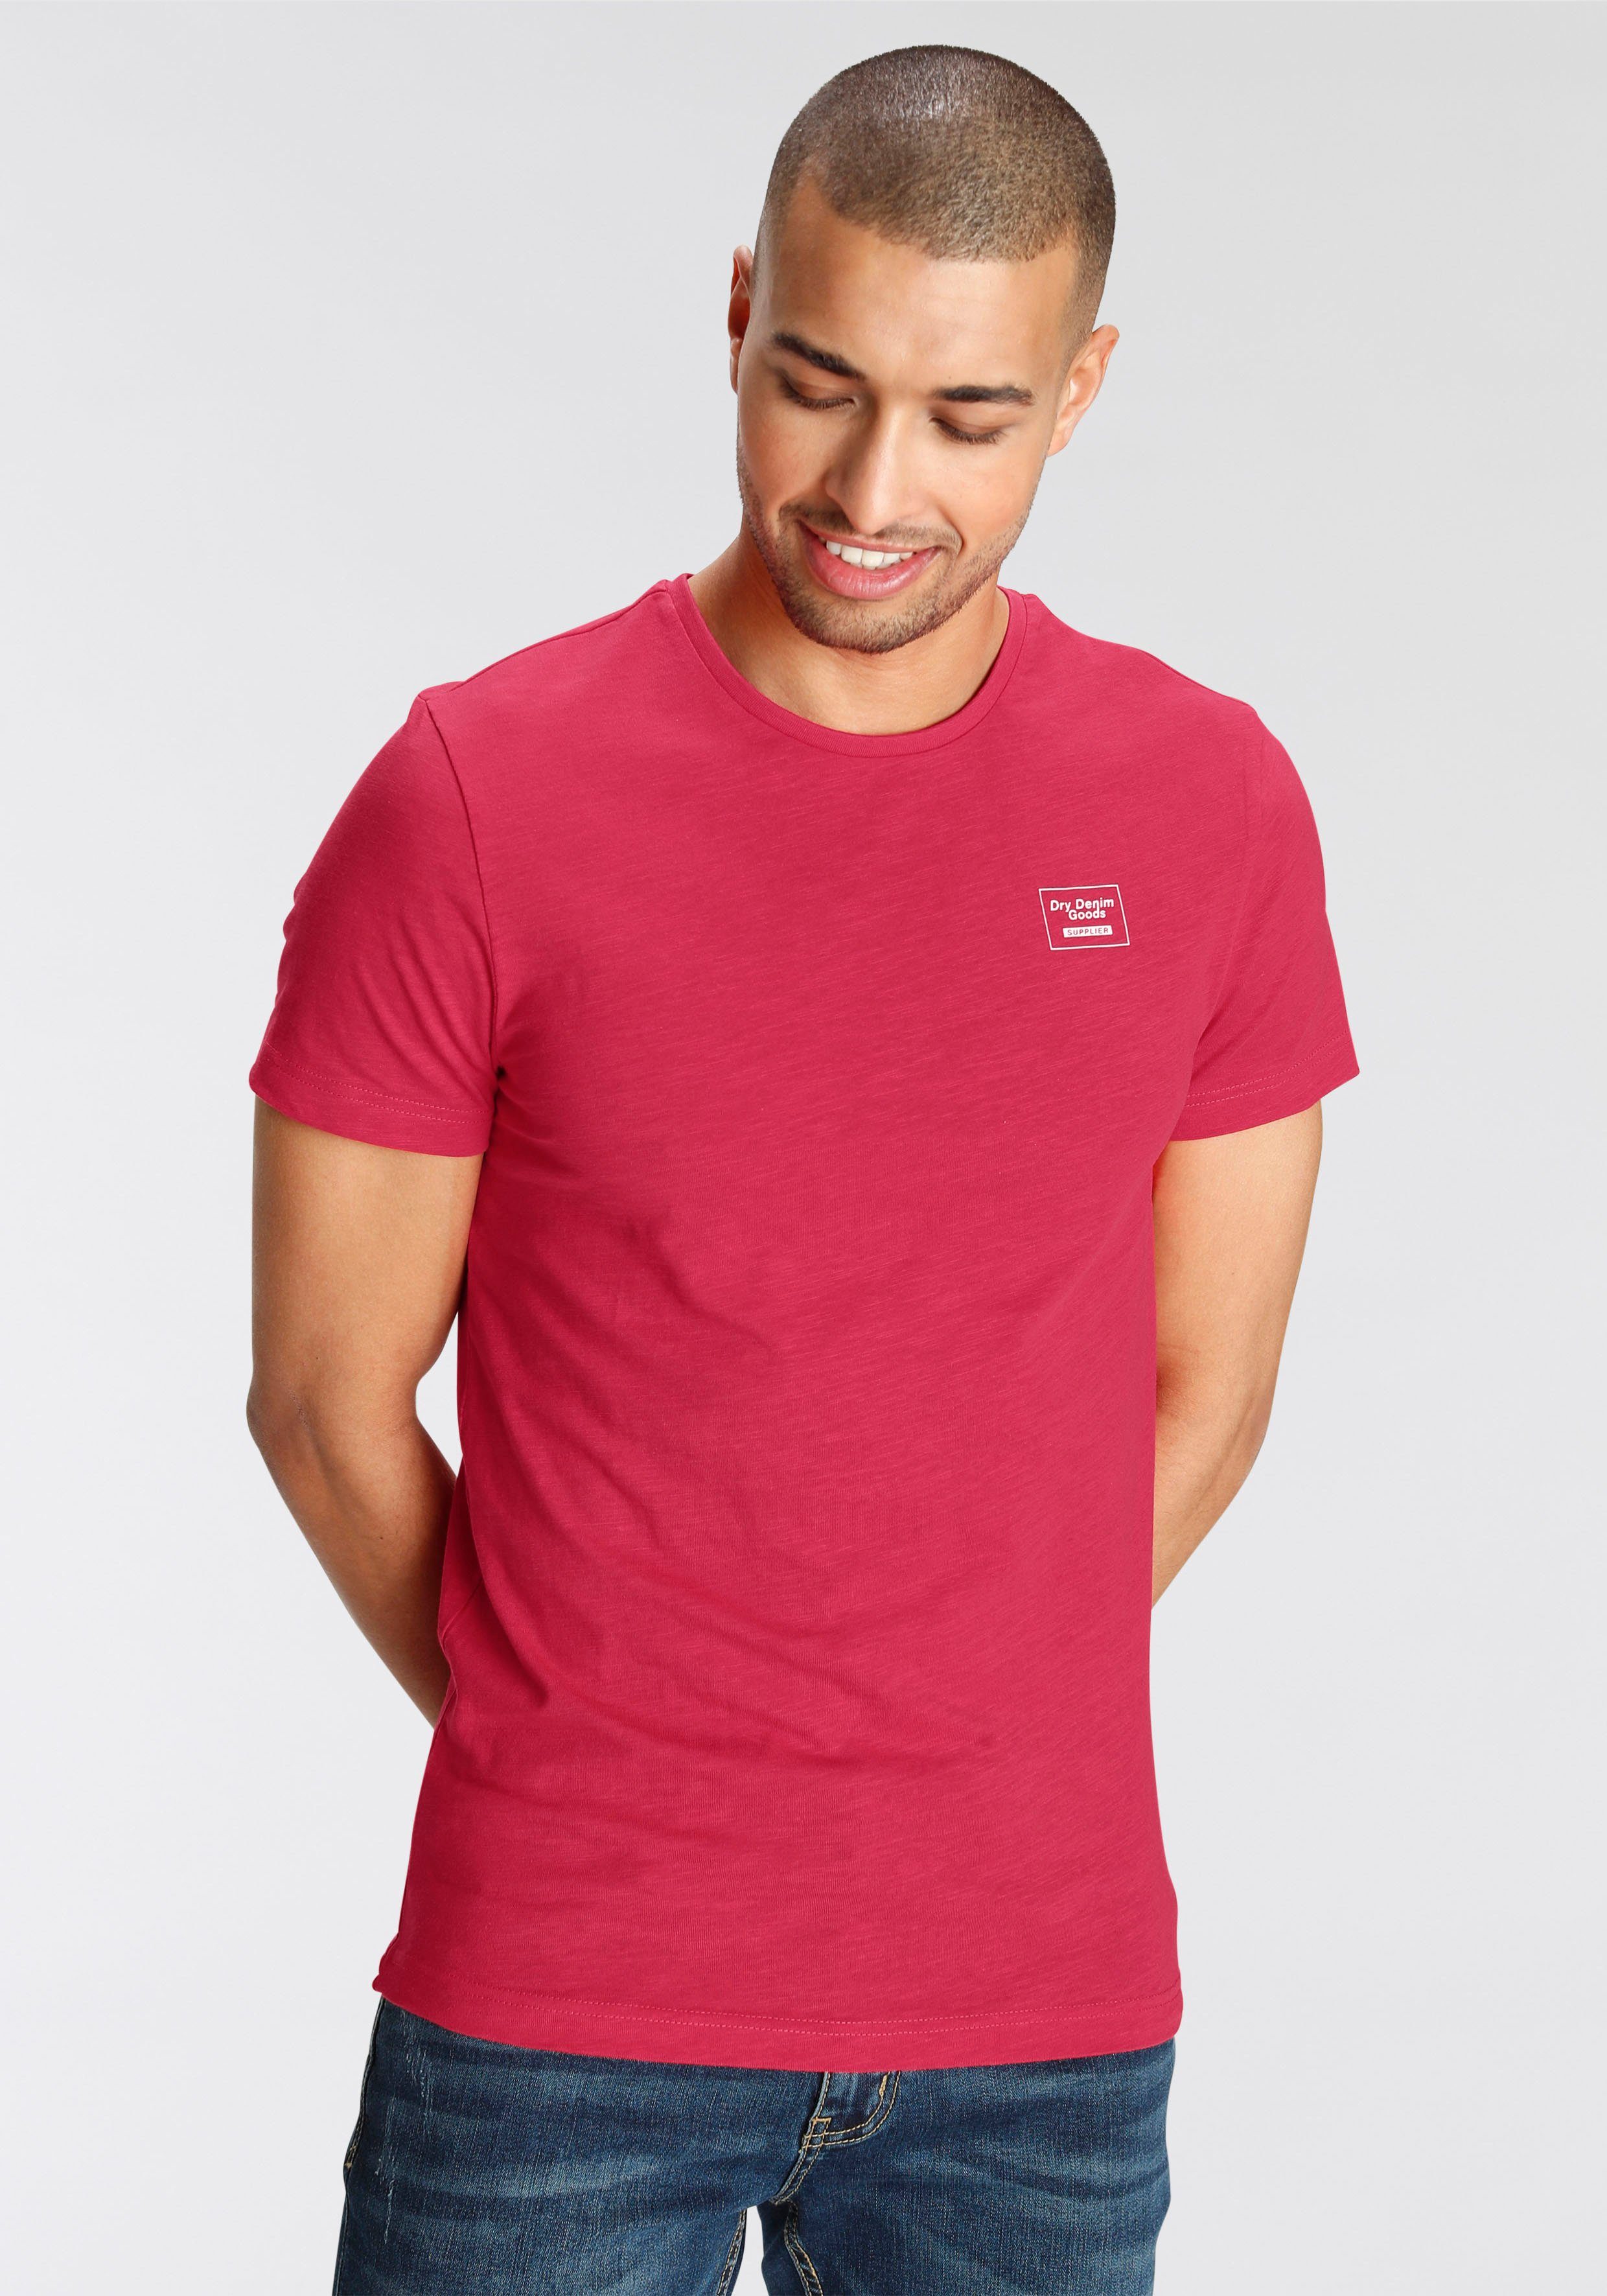 AJC T-Shirt aus hochwertigem Slub rot